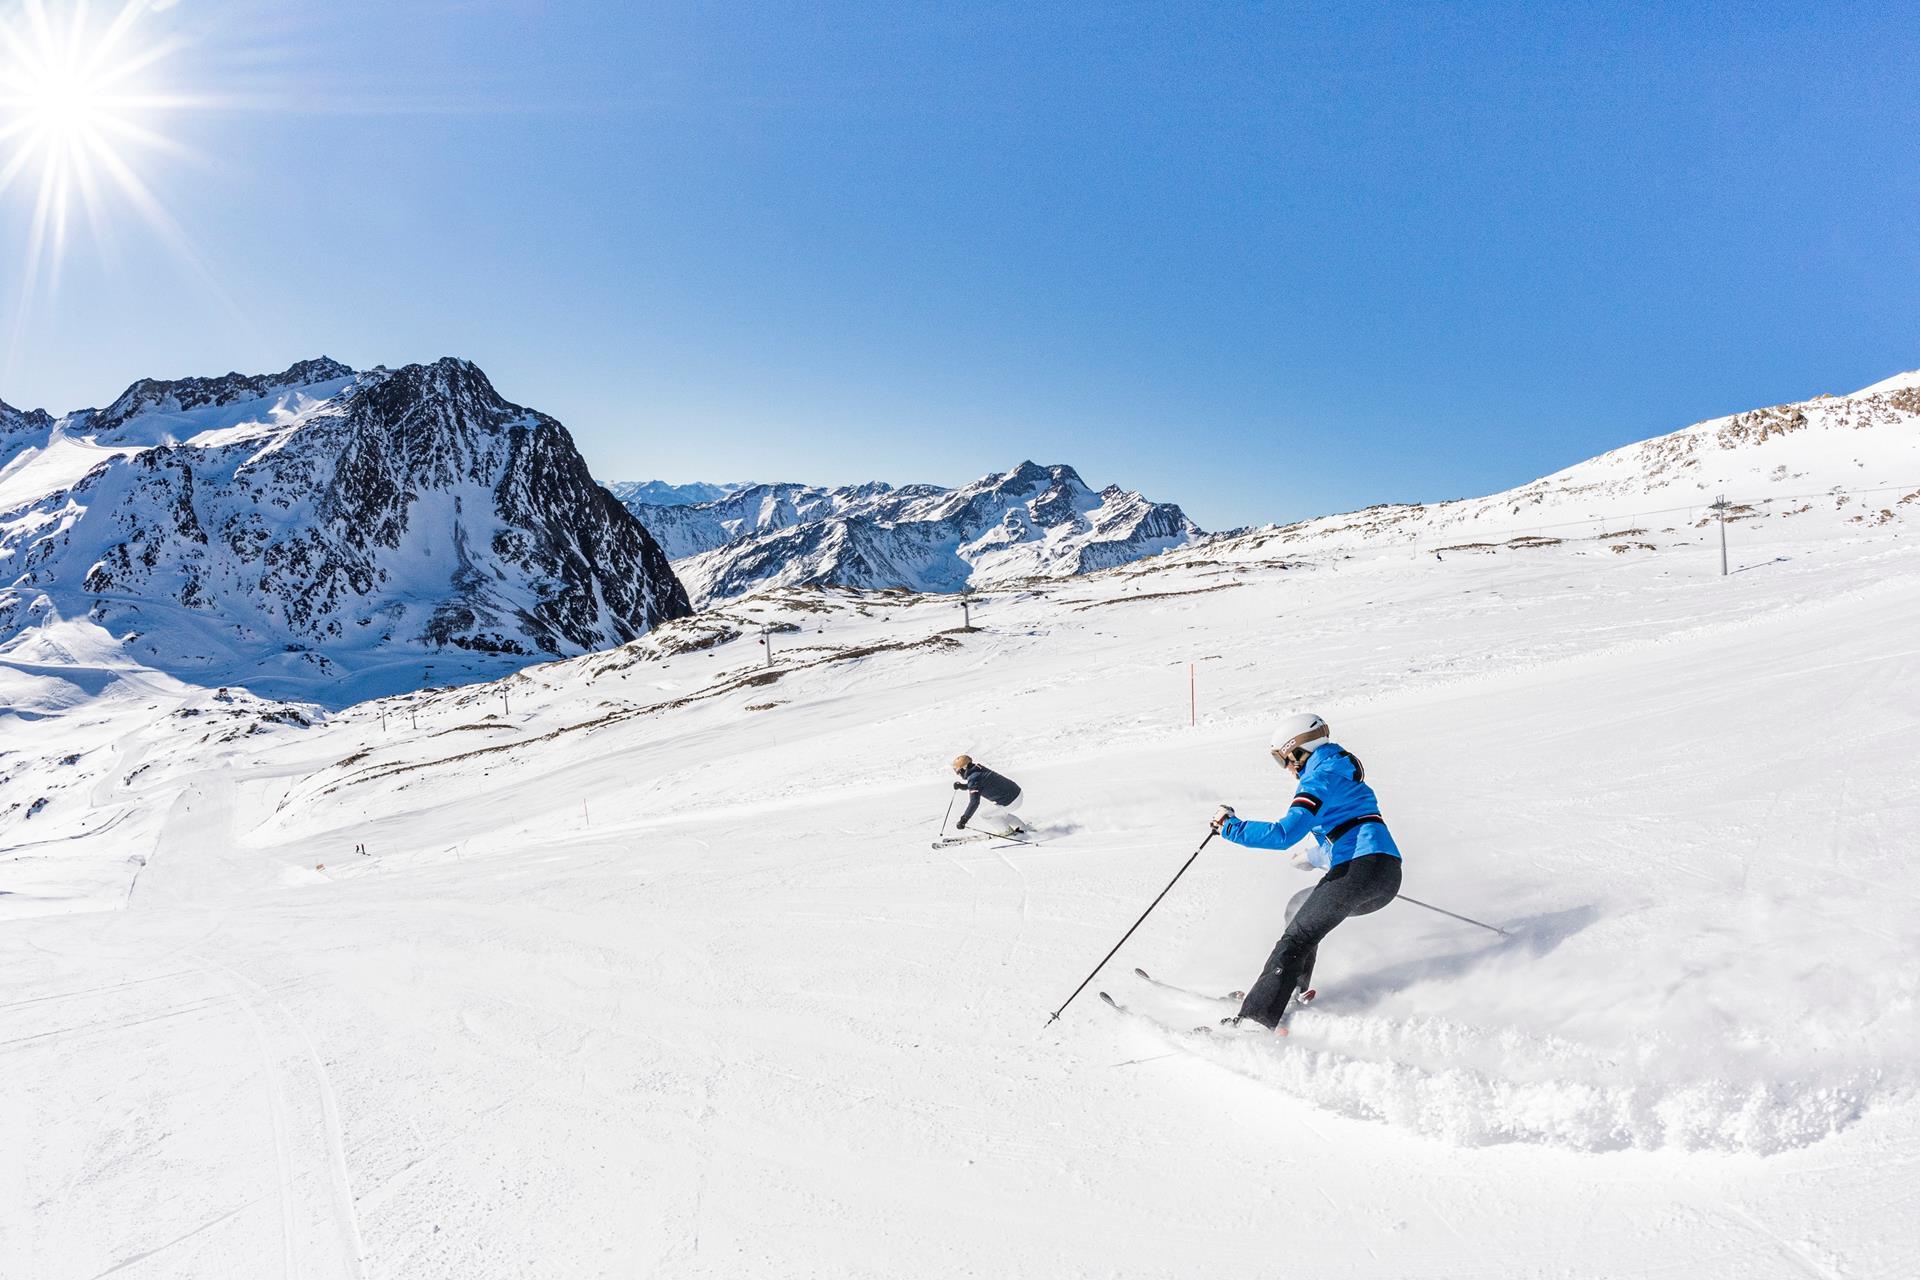 schnalstaler-gletscher-winter-wintersport-alpin-arena-schnals-wisthaler-8